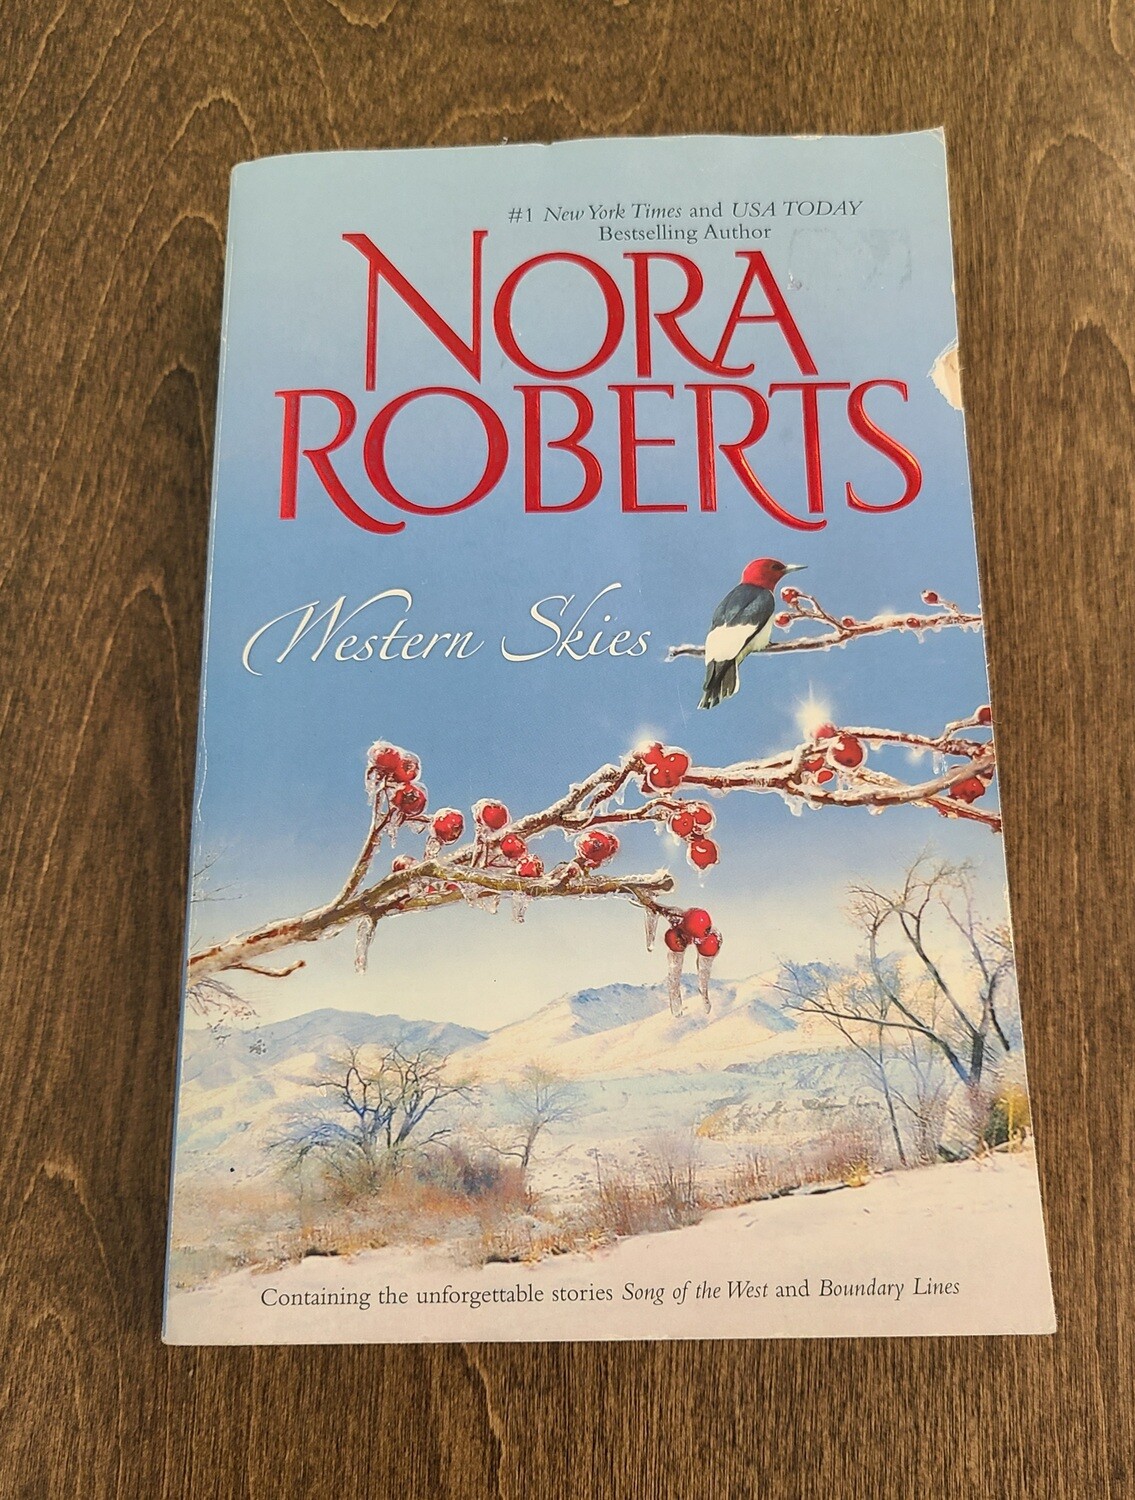 Western Skies by Nora Roberts